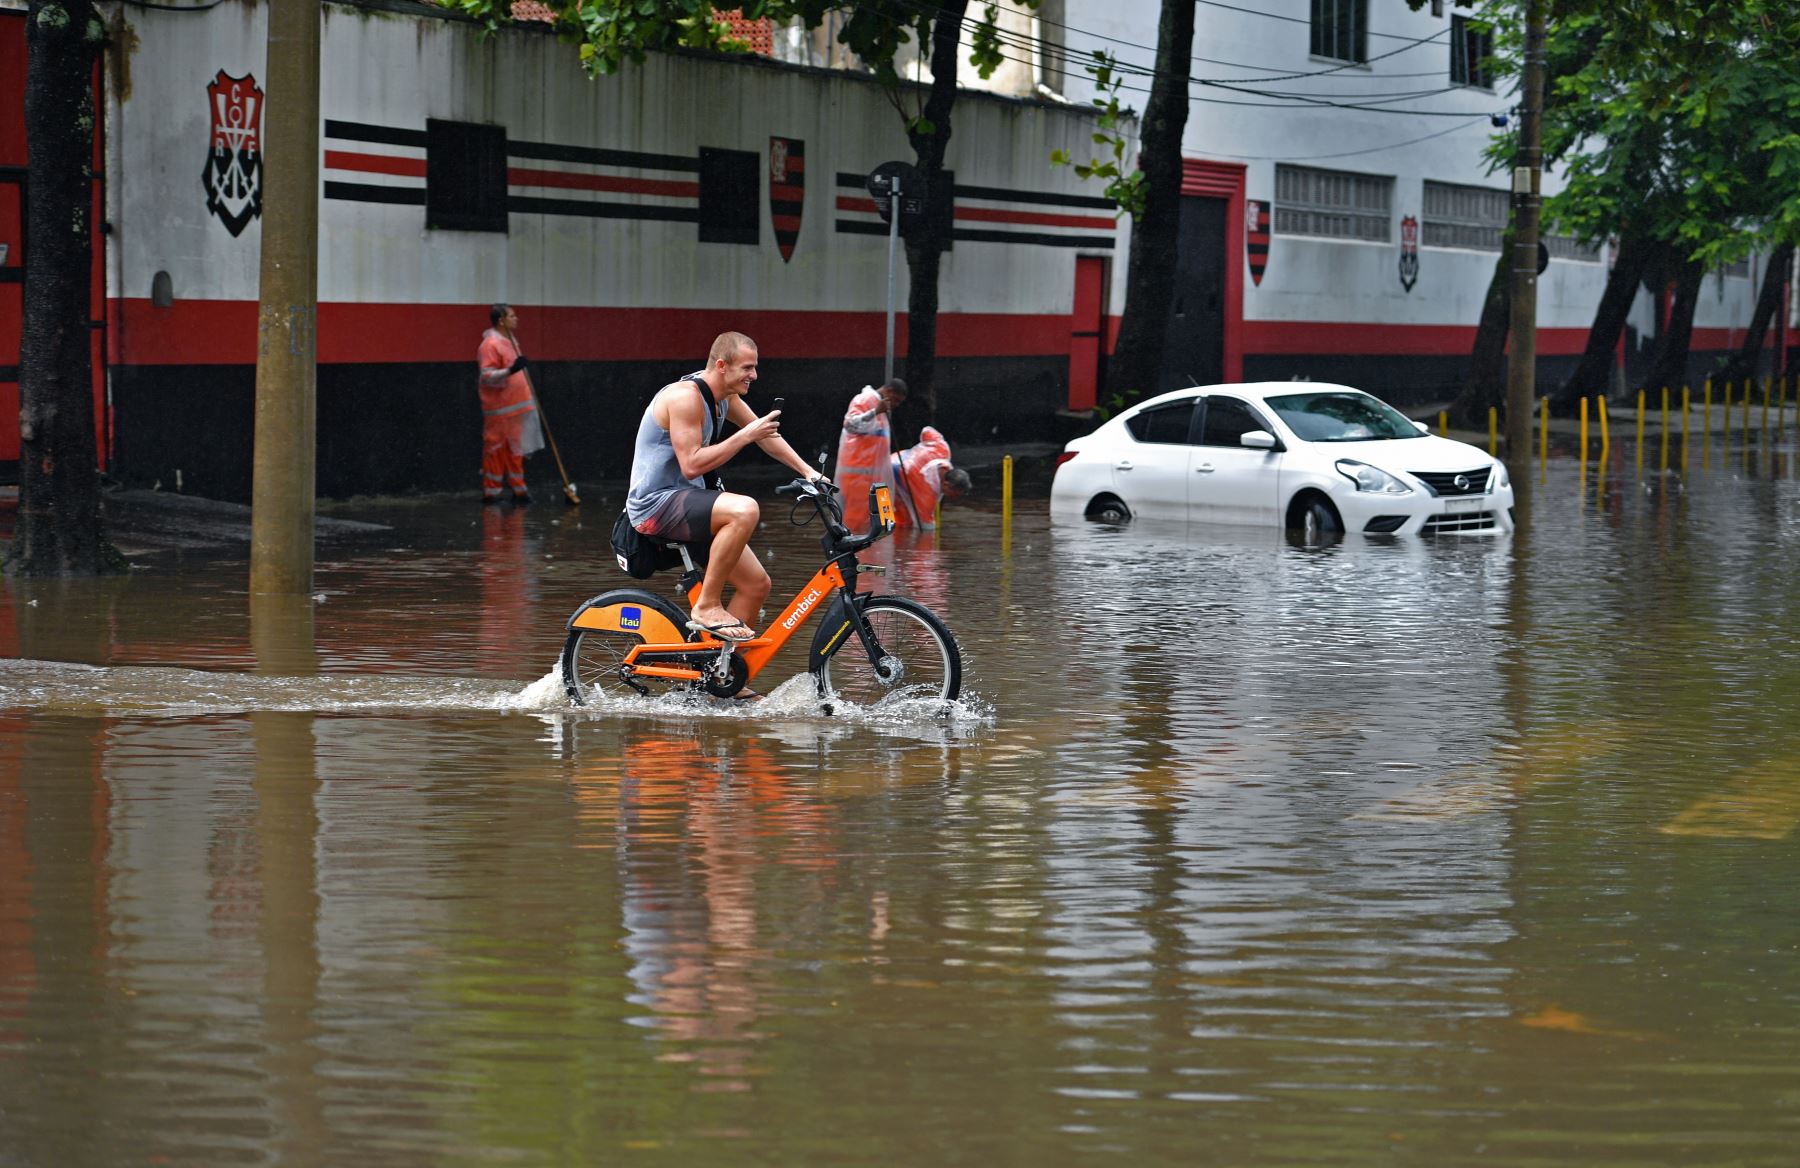 Trabajadores municipales intentan abrir un desagüe al lado de un automóvil varado en un área inundada en Río de Janeiro, Brasil. Foto: AFP